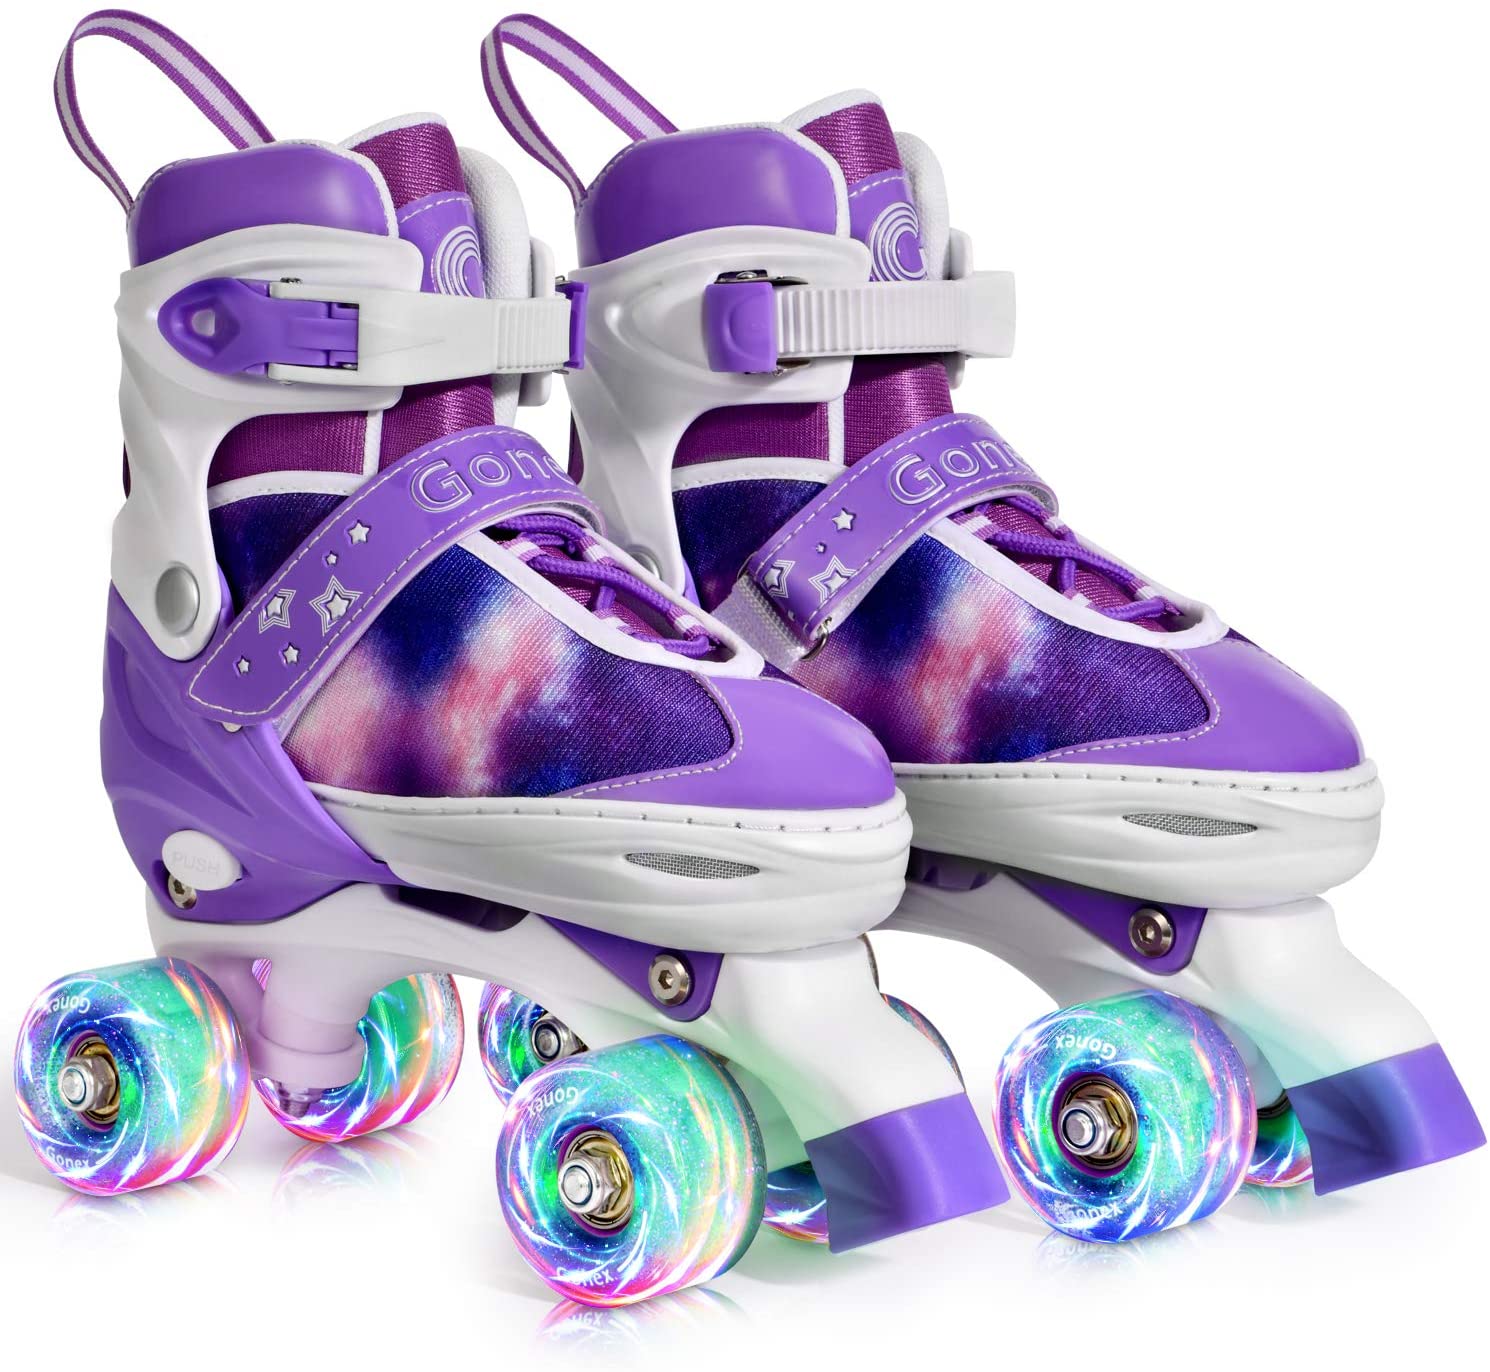 Review of Gonex Roller Skates for Girls